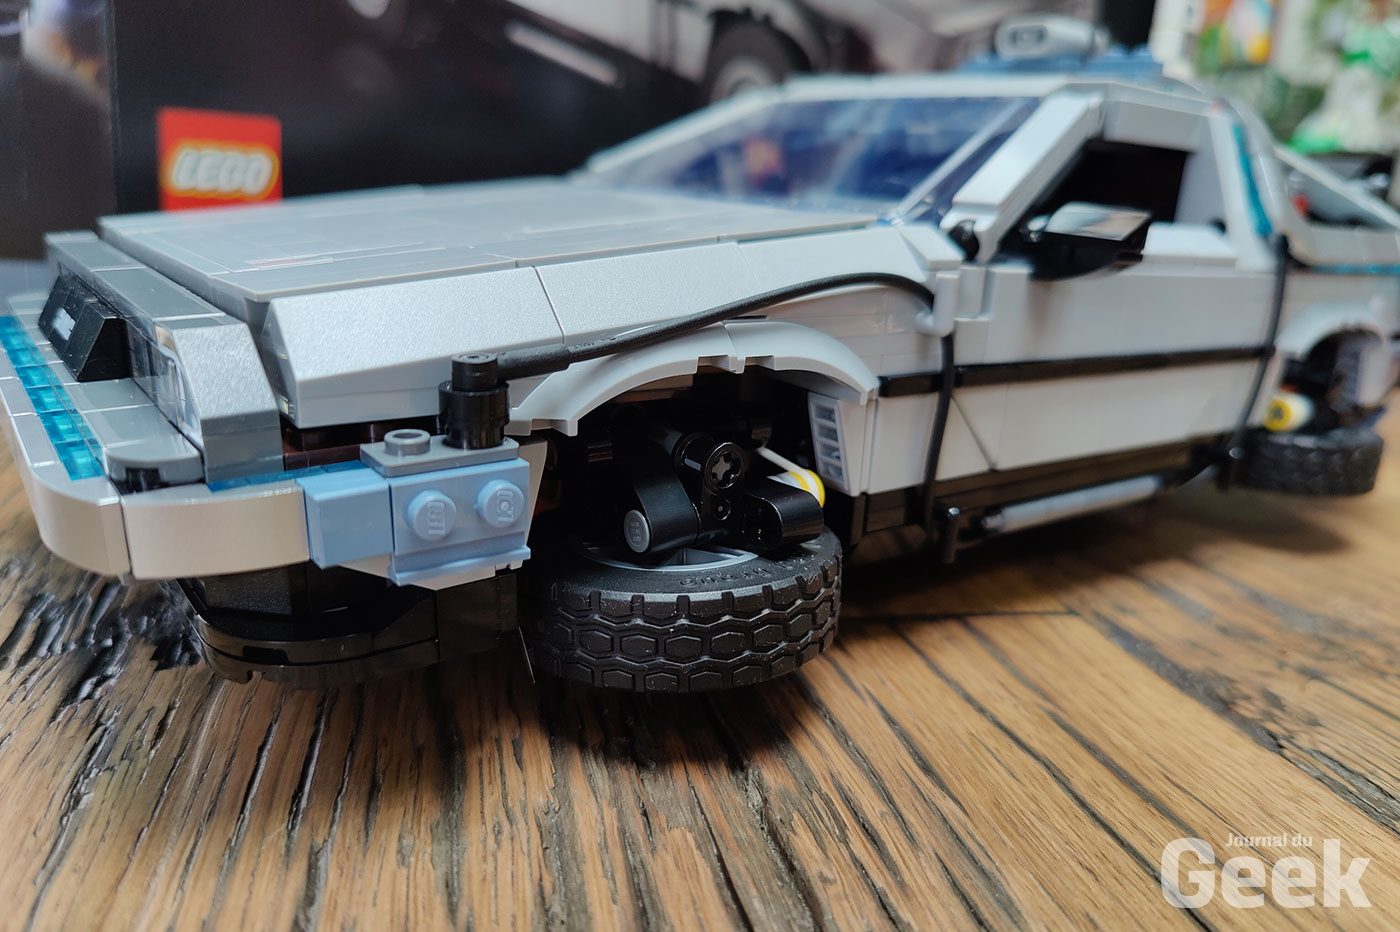 Un Set LEGO Dédié à la DeLorean de Retour Vers le Futur